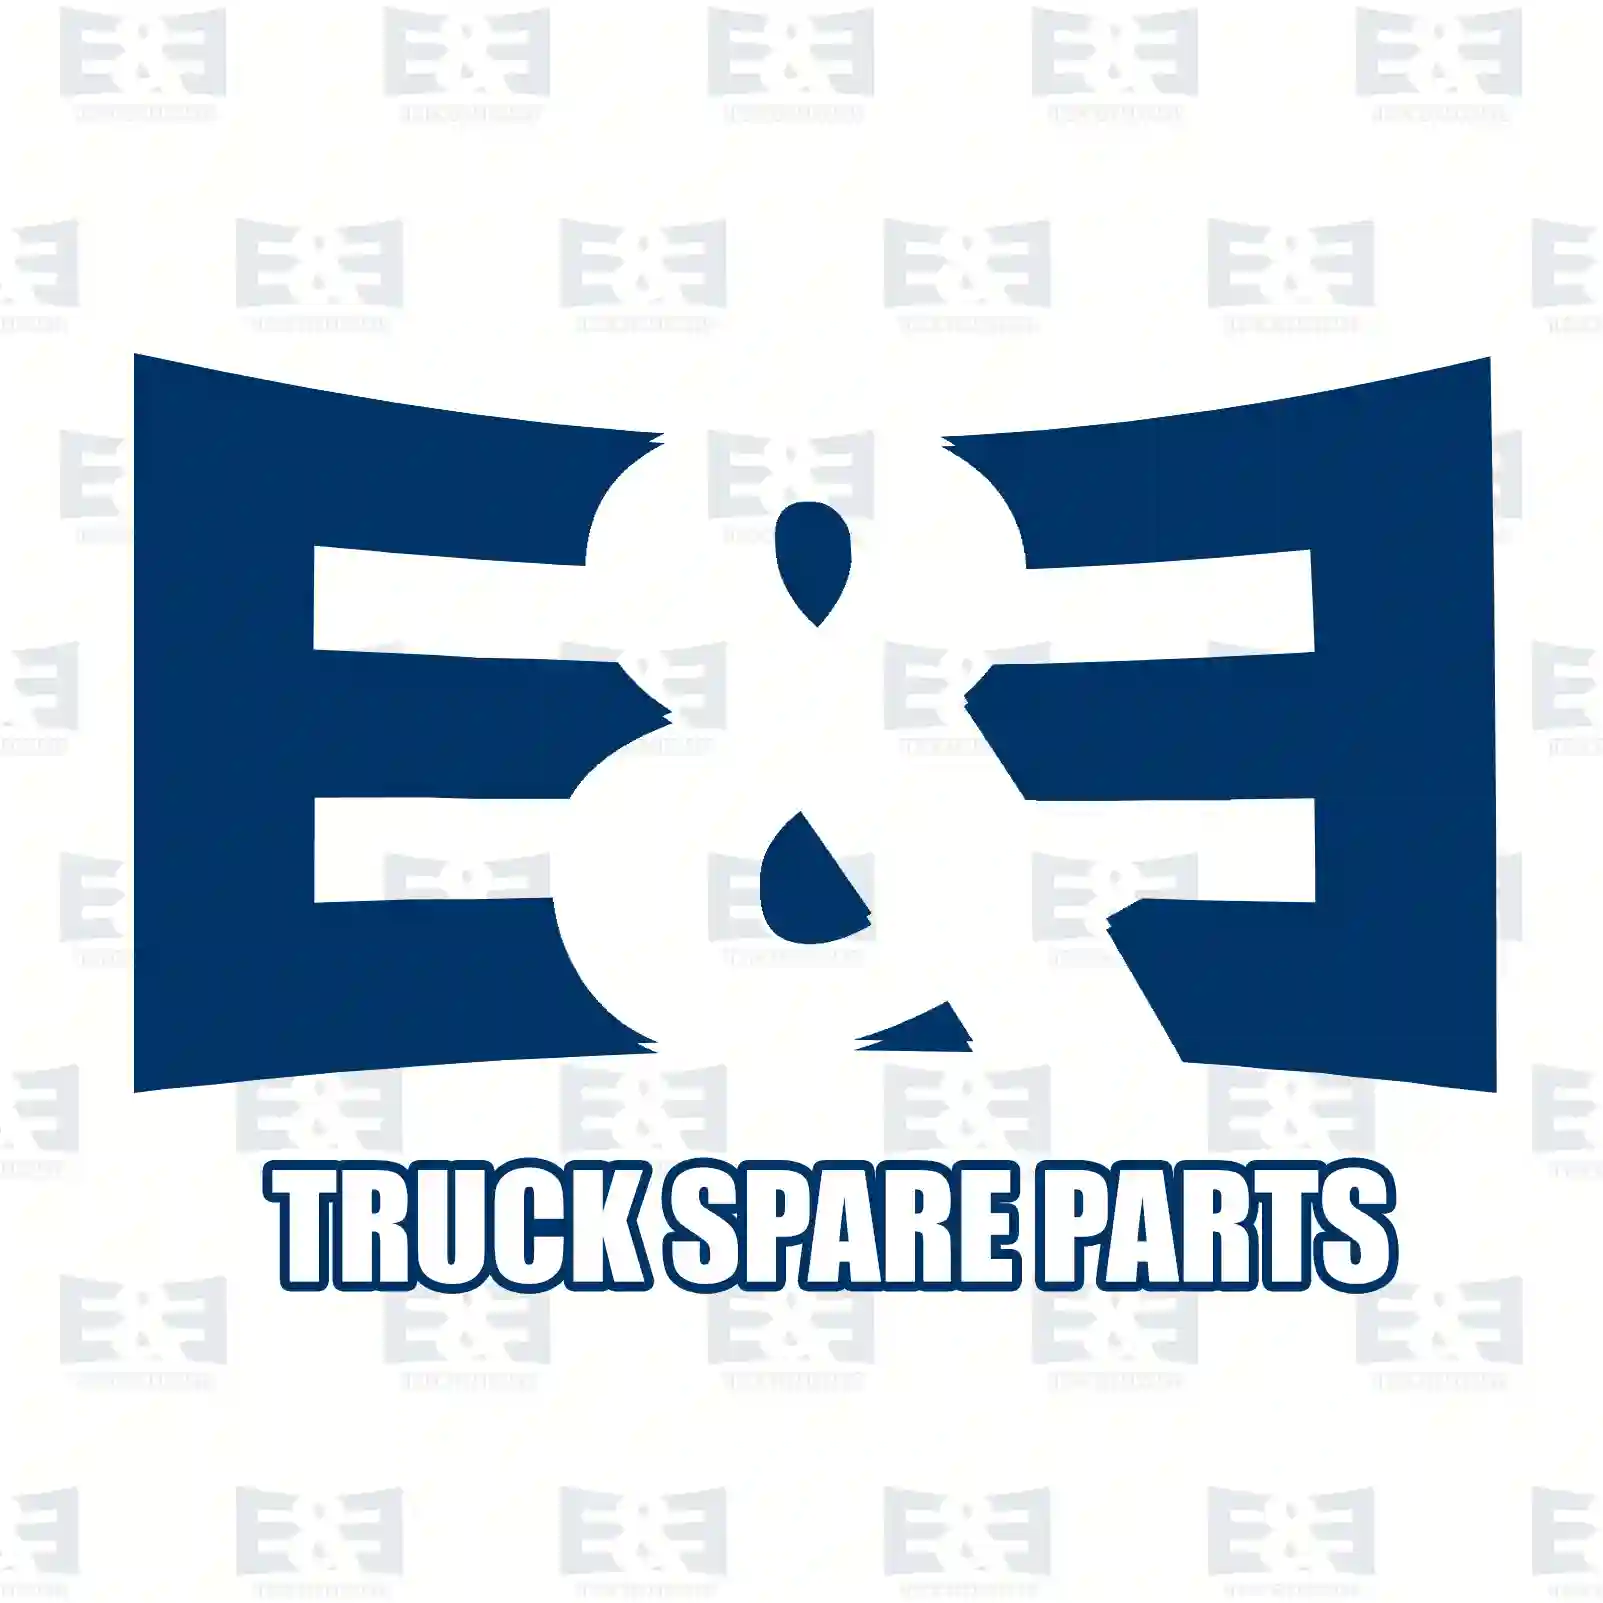 Wiper linkage, 2E2292396, 500362502, 500395028, 504019897, 504033863, 504084722 ||  2E2292396 E&E Truck Spare Parts | Truck Spare Parts, Auotomotive Spare Parts Wiper linkage, 2E2292396, 500362502, 500395028, 504019897, 504033863, 504084722 ||  2E2292396 E&E Truck Spare Parts | Truck Spare Parts, Auotomotive Spare Parts